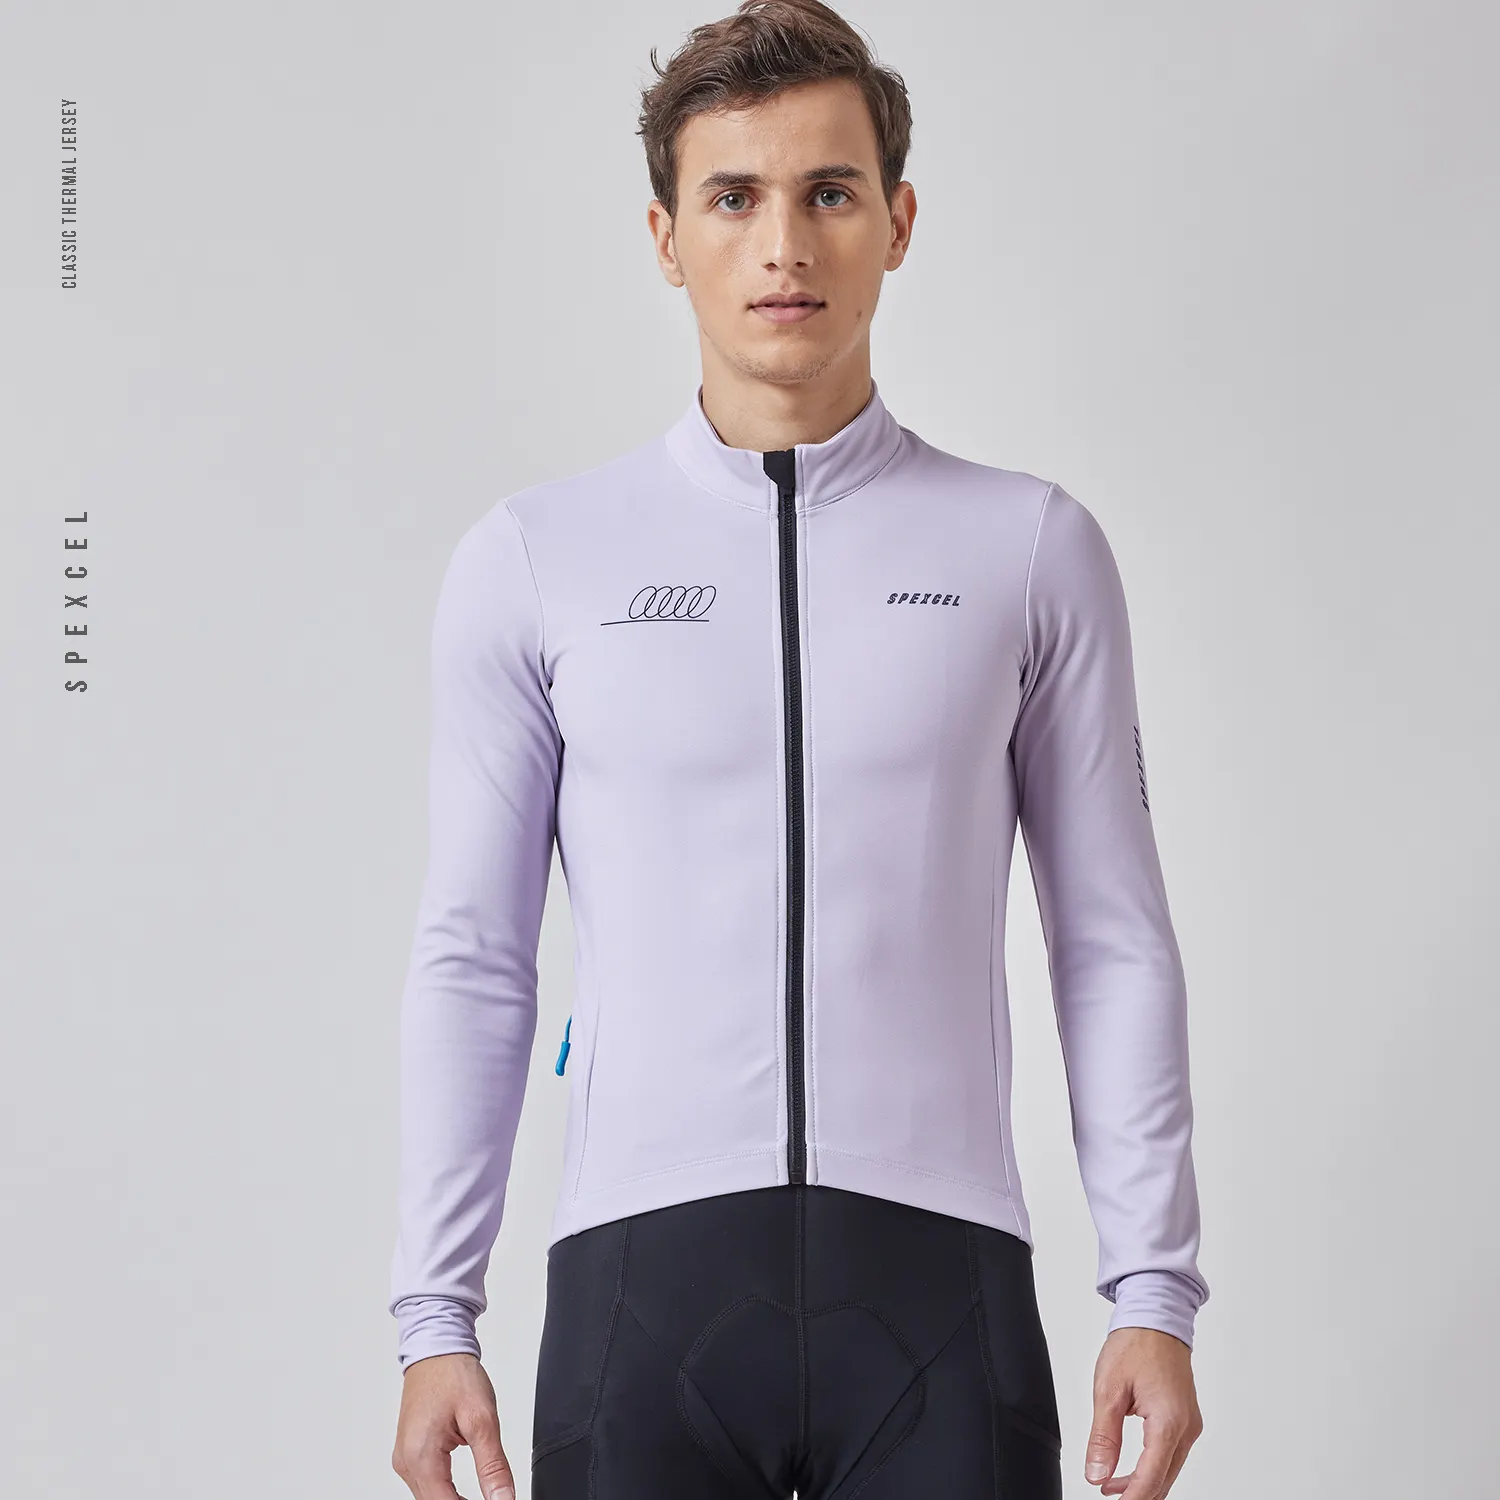 SPEXCEL เสื้อเจอร์ซีย์ปั่นจักรยานผ้าขนแกะร้อน,เสื้อใหม่ล่าสุดเนื้อผ้ามีกระเป๋ามีซิปสำหรับผู้ชายปี2022